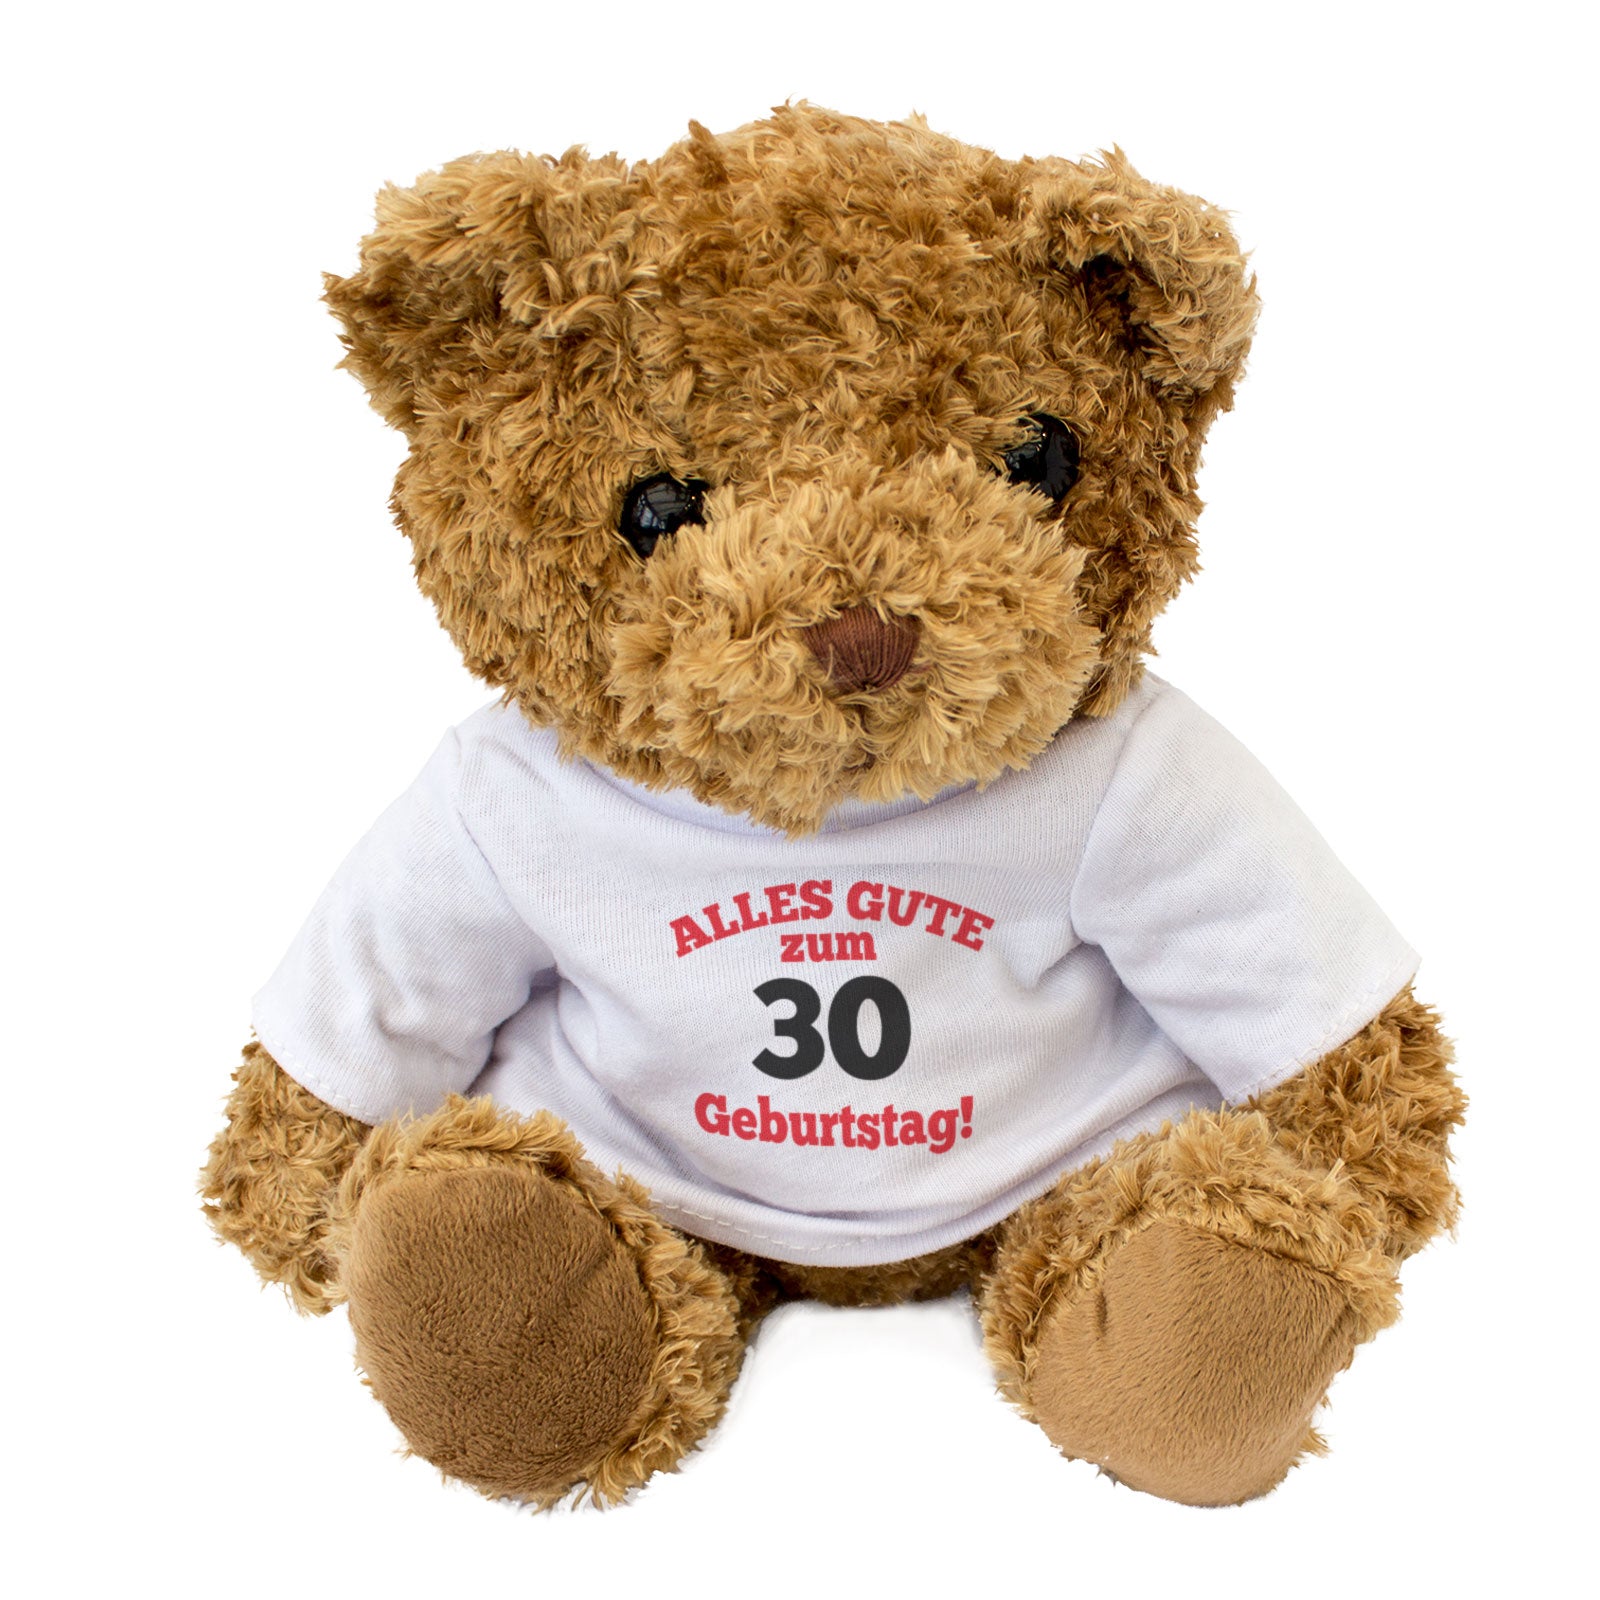 Alles Gute Zum 30 Geburtstag - Teddy Bear - Gift Present